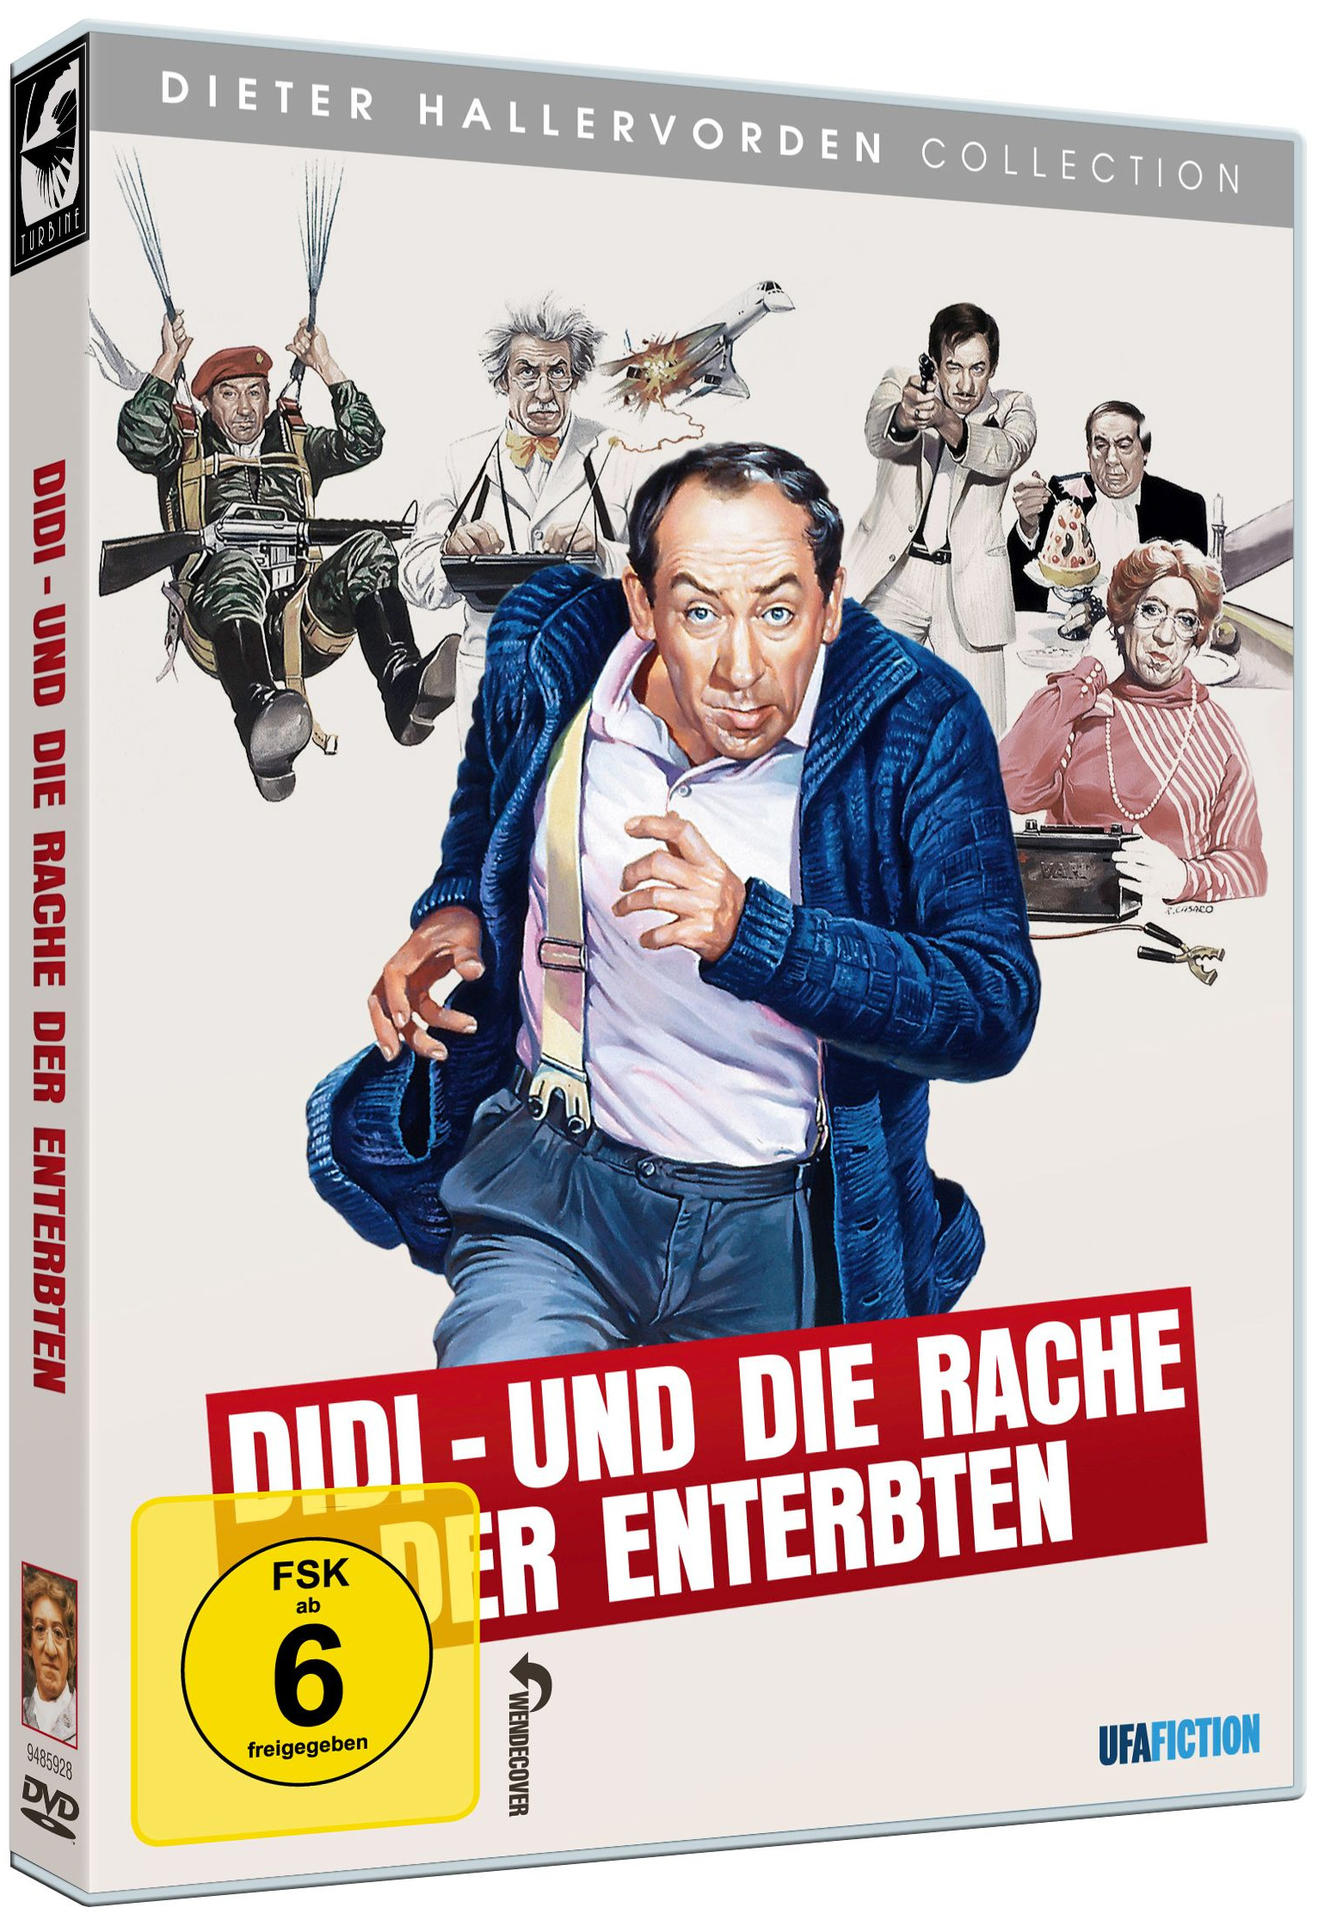 Didi - die Enterbten der Und Rache DVD